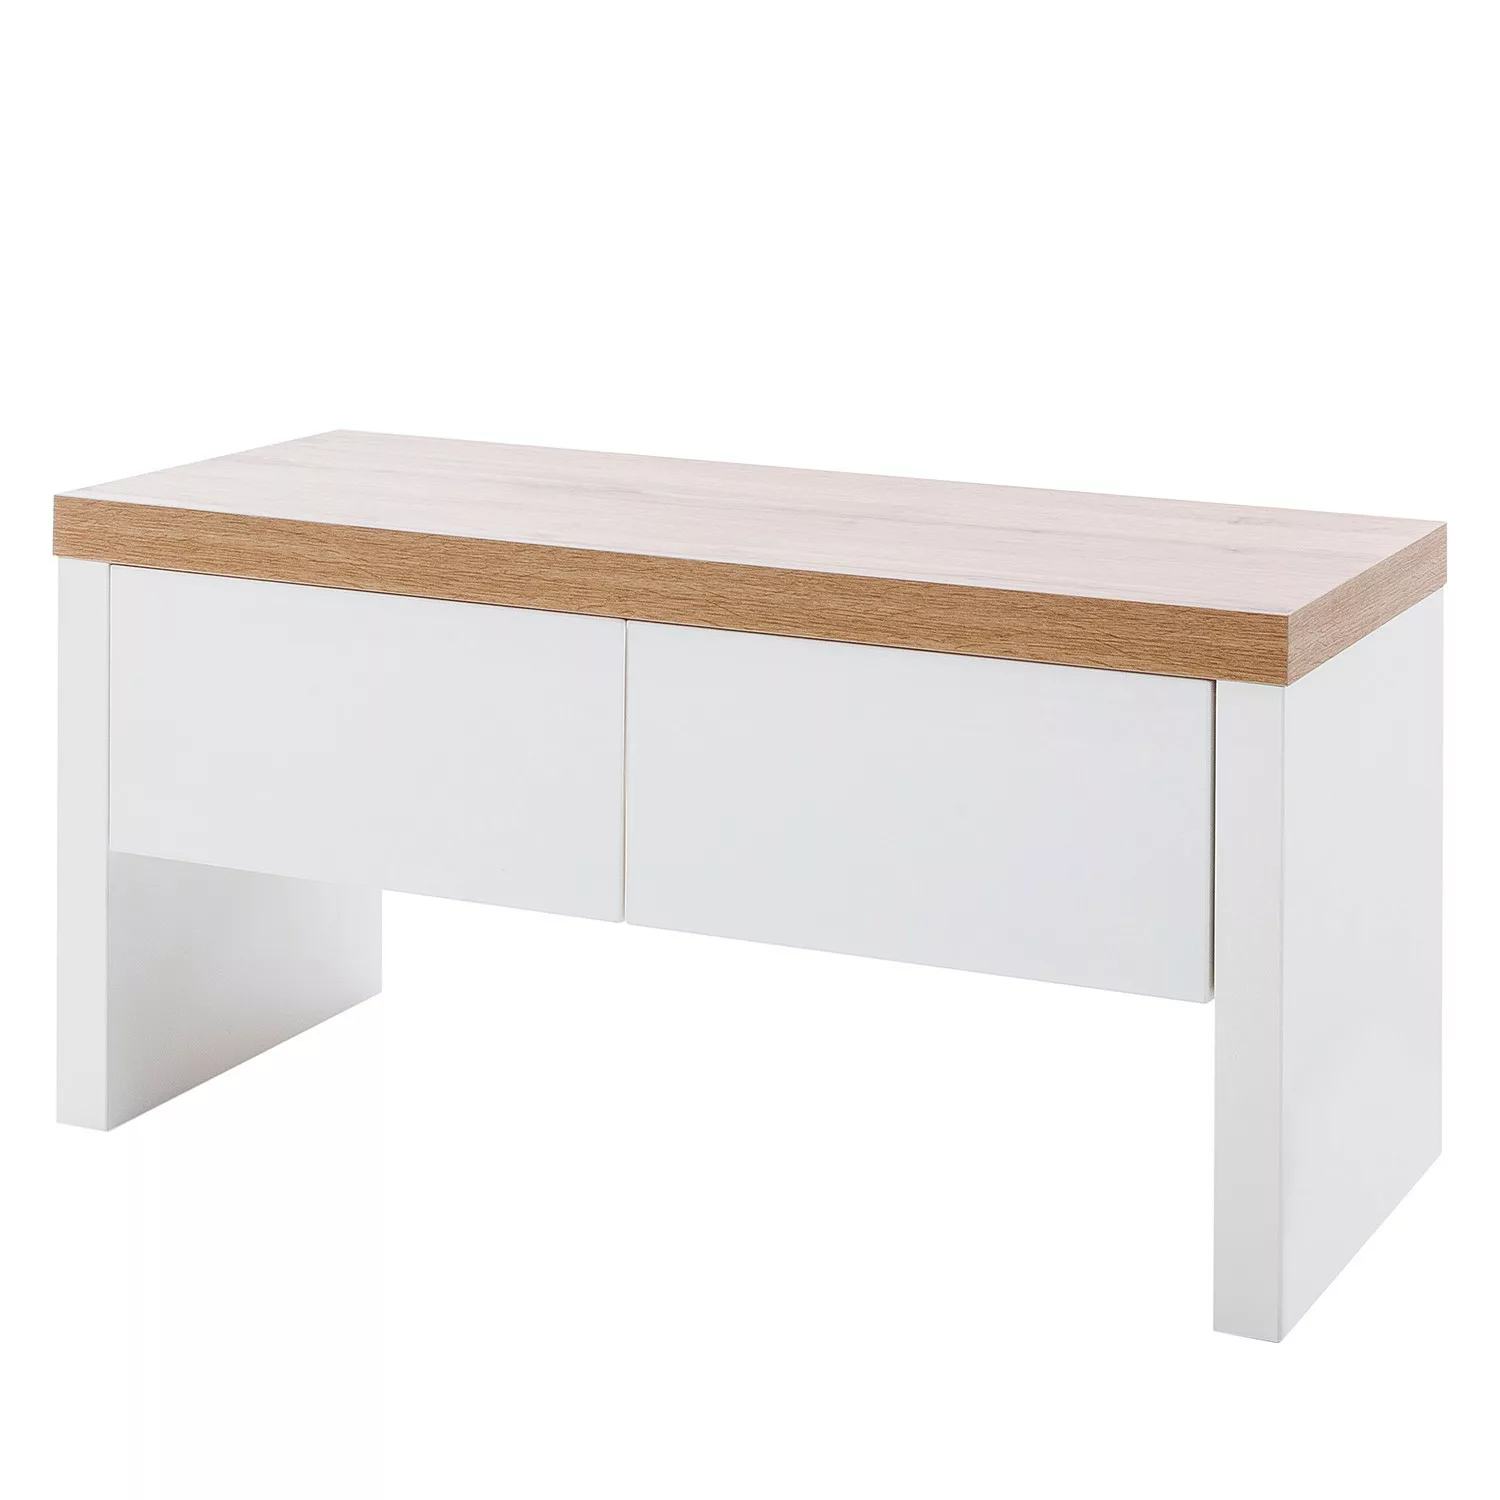 MCA furniture Schuhschrank Garderobenbank Cali günstig online kaufen